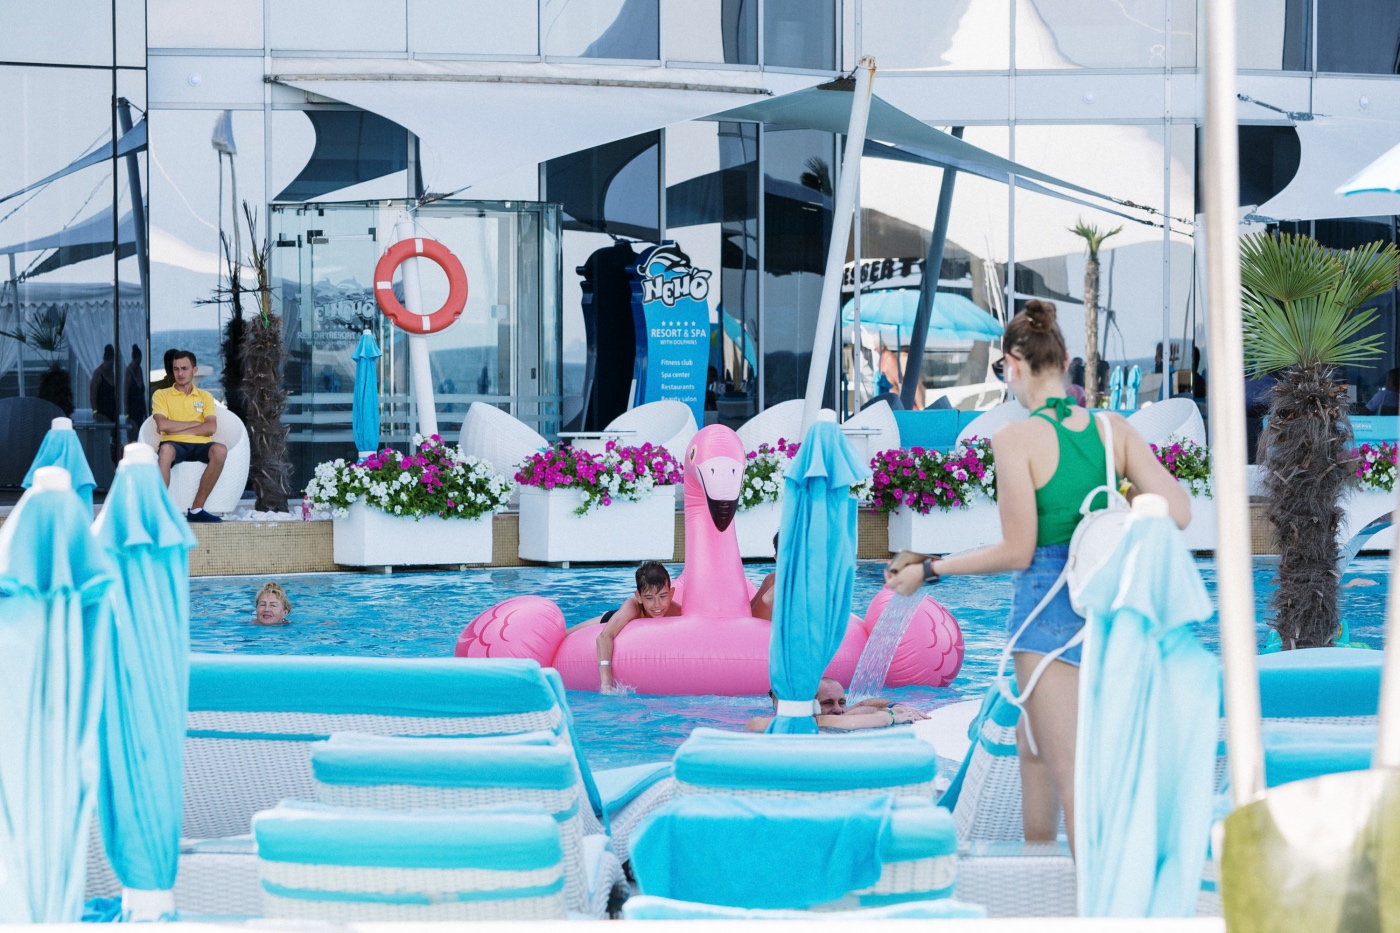 Если же самодеятельный отдых не устраивает – добро пожаловать в Nemo Resort & Spa. В будний день за 27,5 BYN вам предоставят шезлонг, зонт и полотенце, а также неограниченный доступ в бассейн. В выходные стоимость возрастает до 39,3 BYN.